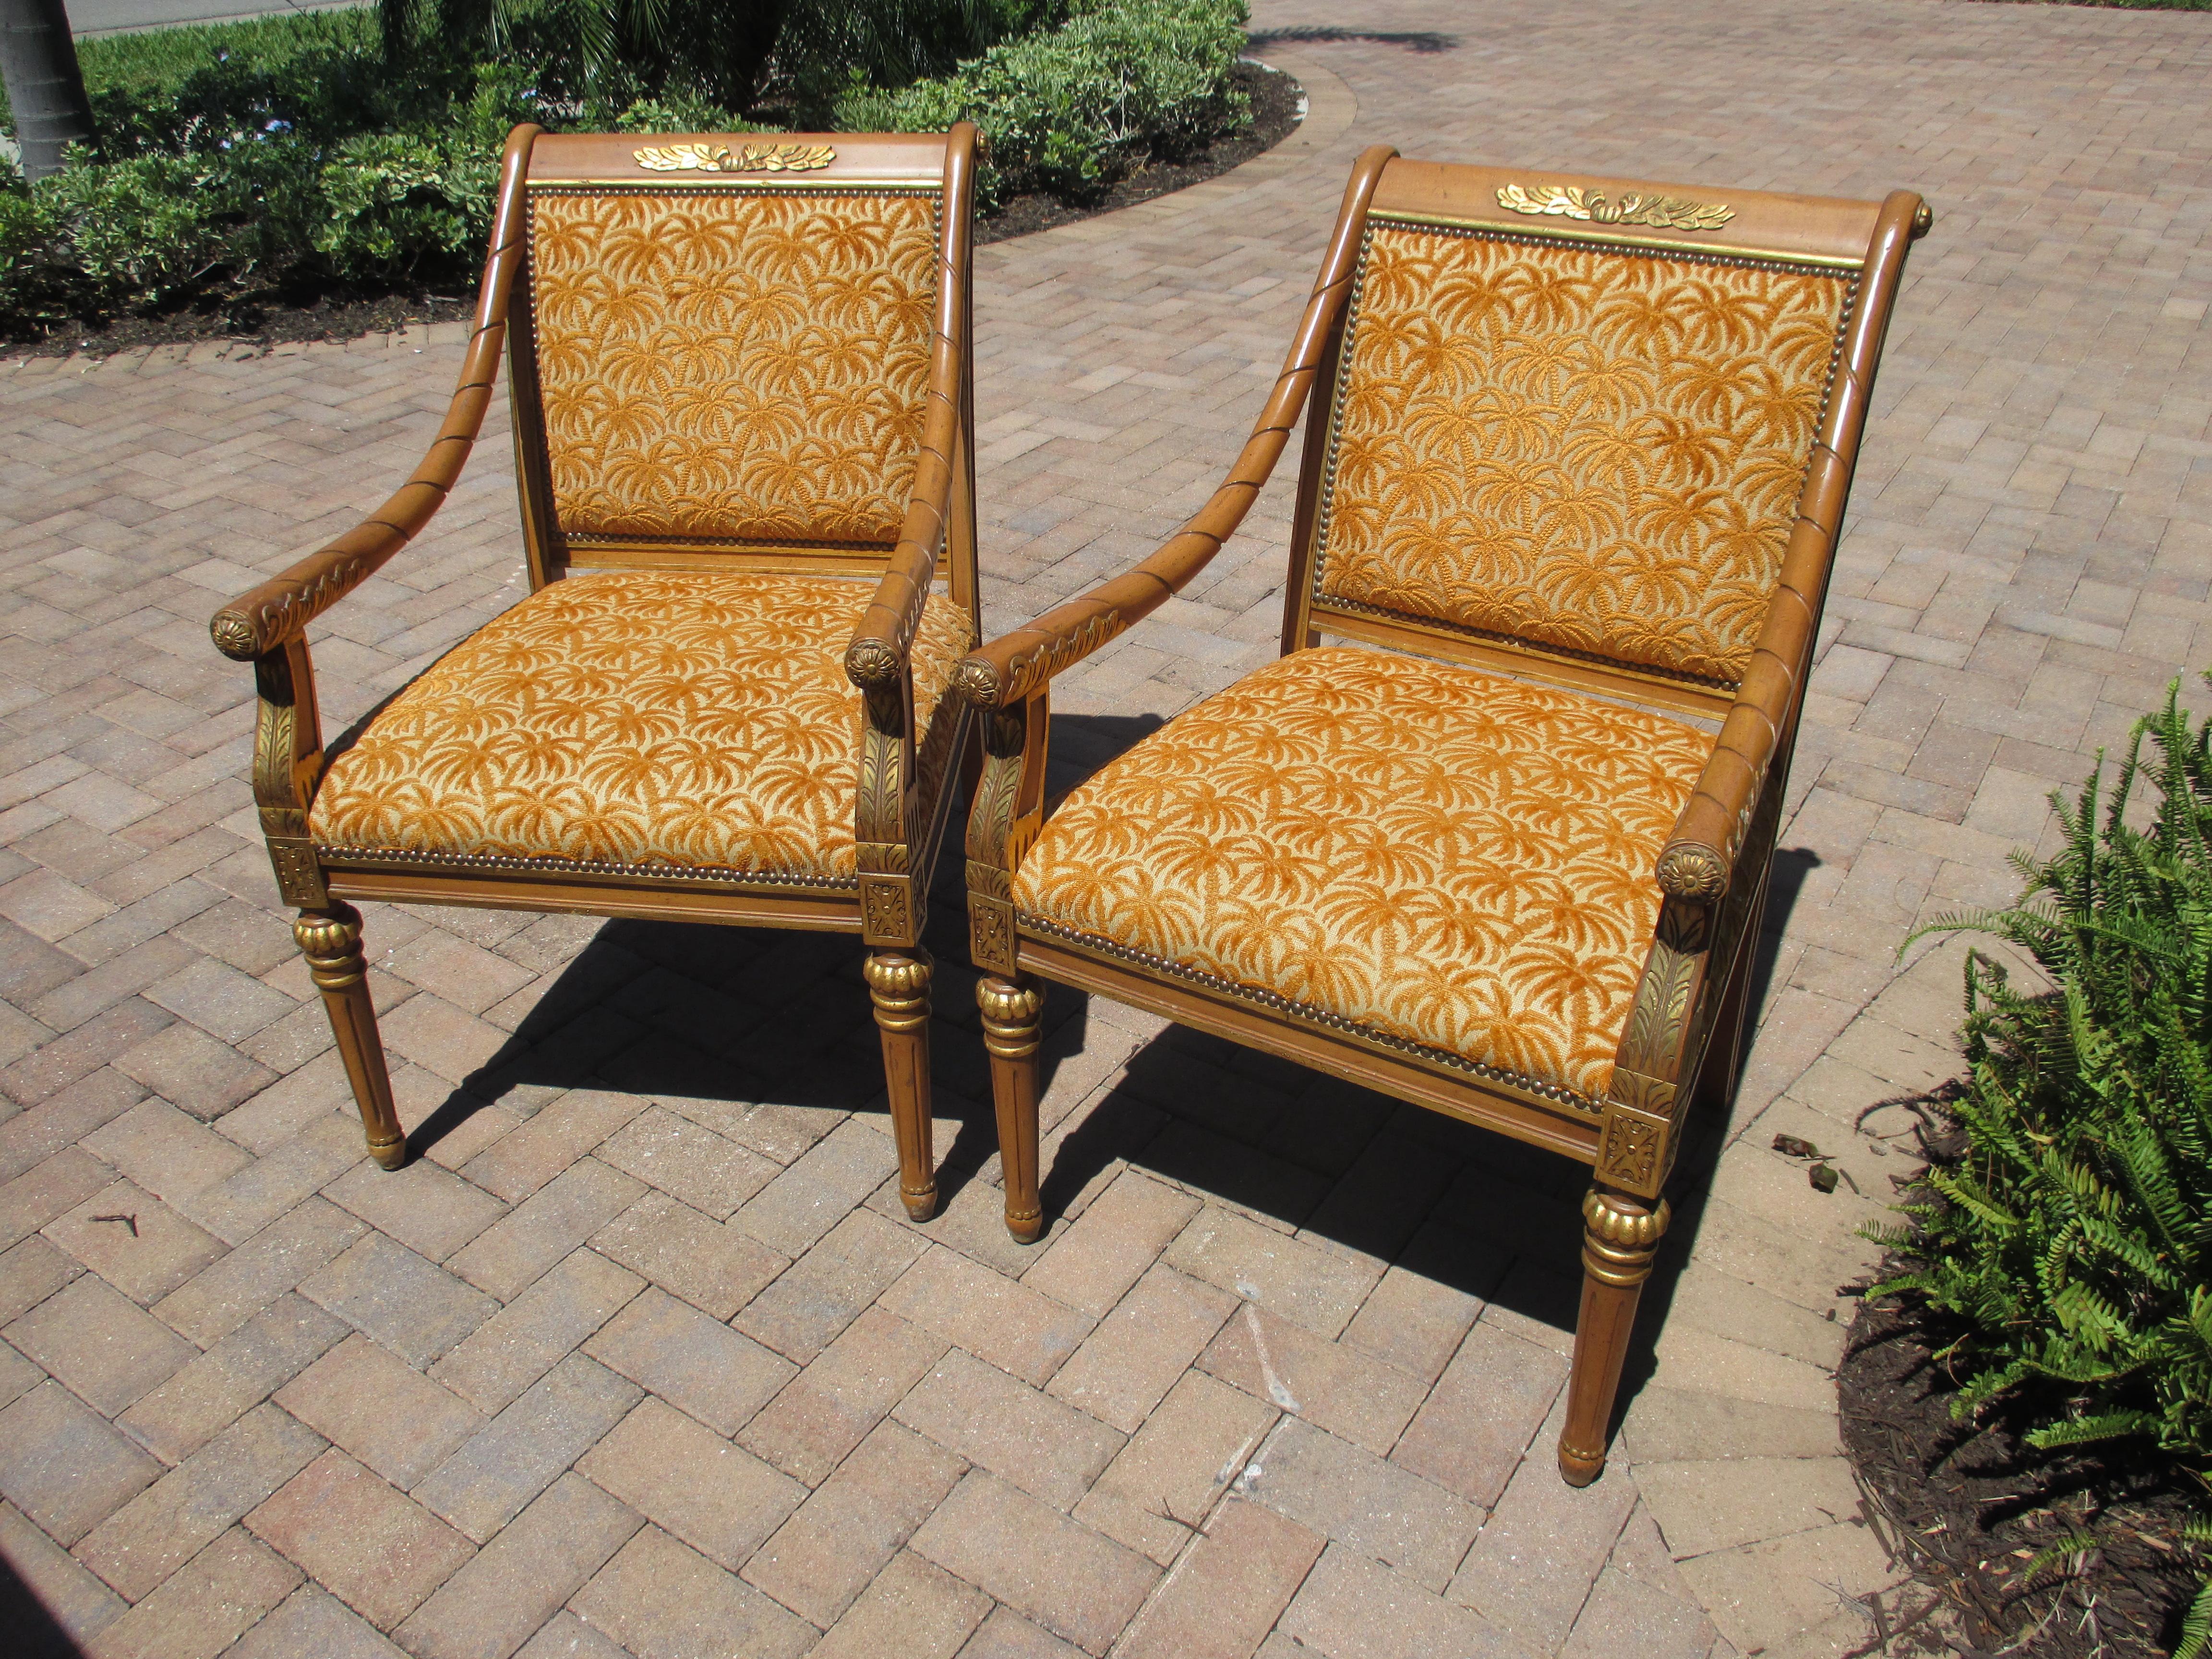 Wunderschönes Paar honigfarben gebeizter Isenhour-Stühle mit vergoldeten Akzenten, Schnitzereien und Nagelkopfverzierungen. Die Stühle haben eine orangefarbene, gut erhaltene Original-Polsterung. Stuhl Messungen aufgeführt sind, jedoch gibt es eine